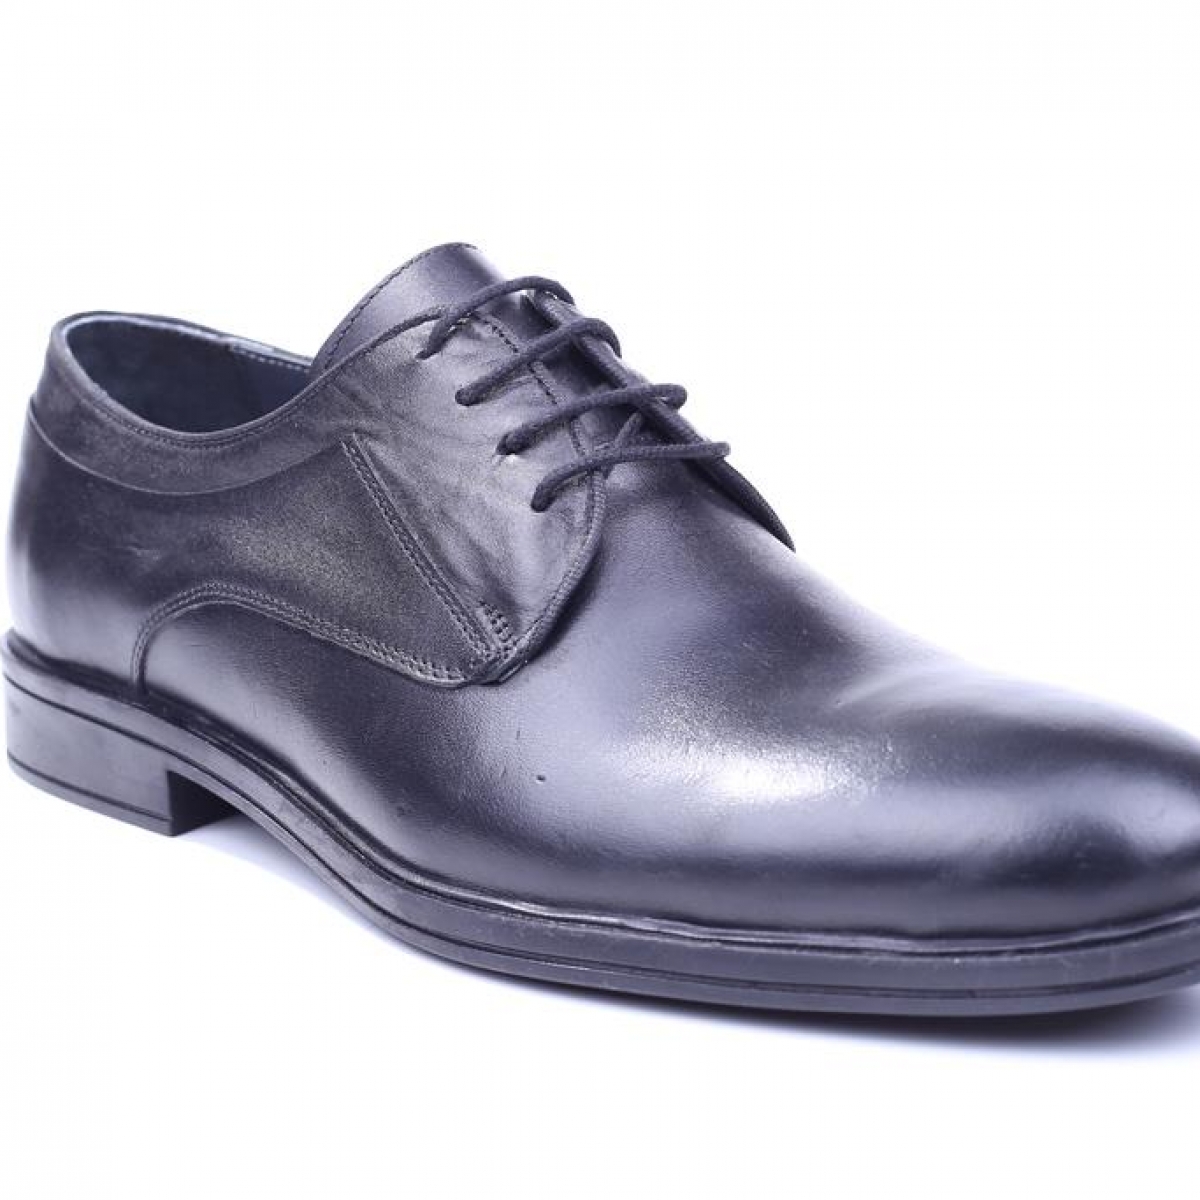 Flo Tardelli 4345 Siyah Büyük Numara Termo Taban Bağcıklı Hakiki Deri Erkek Ayakkabı. 1